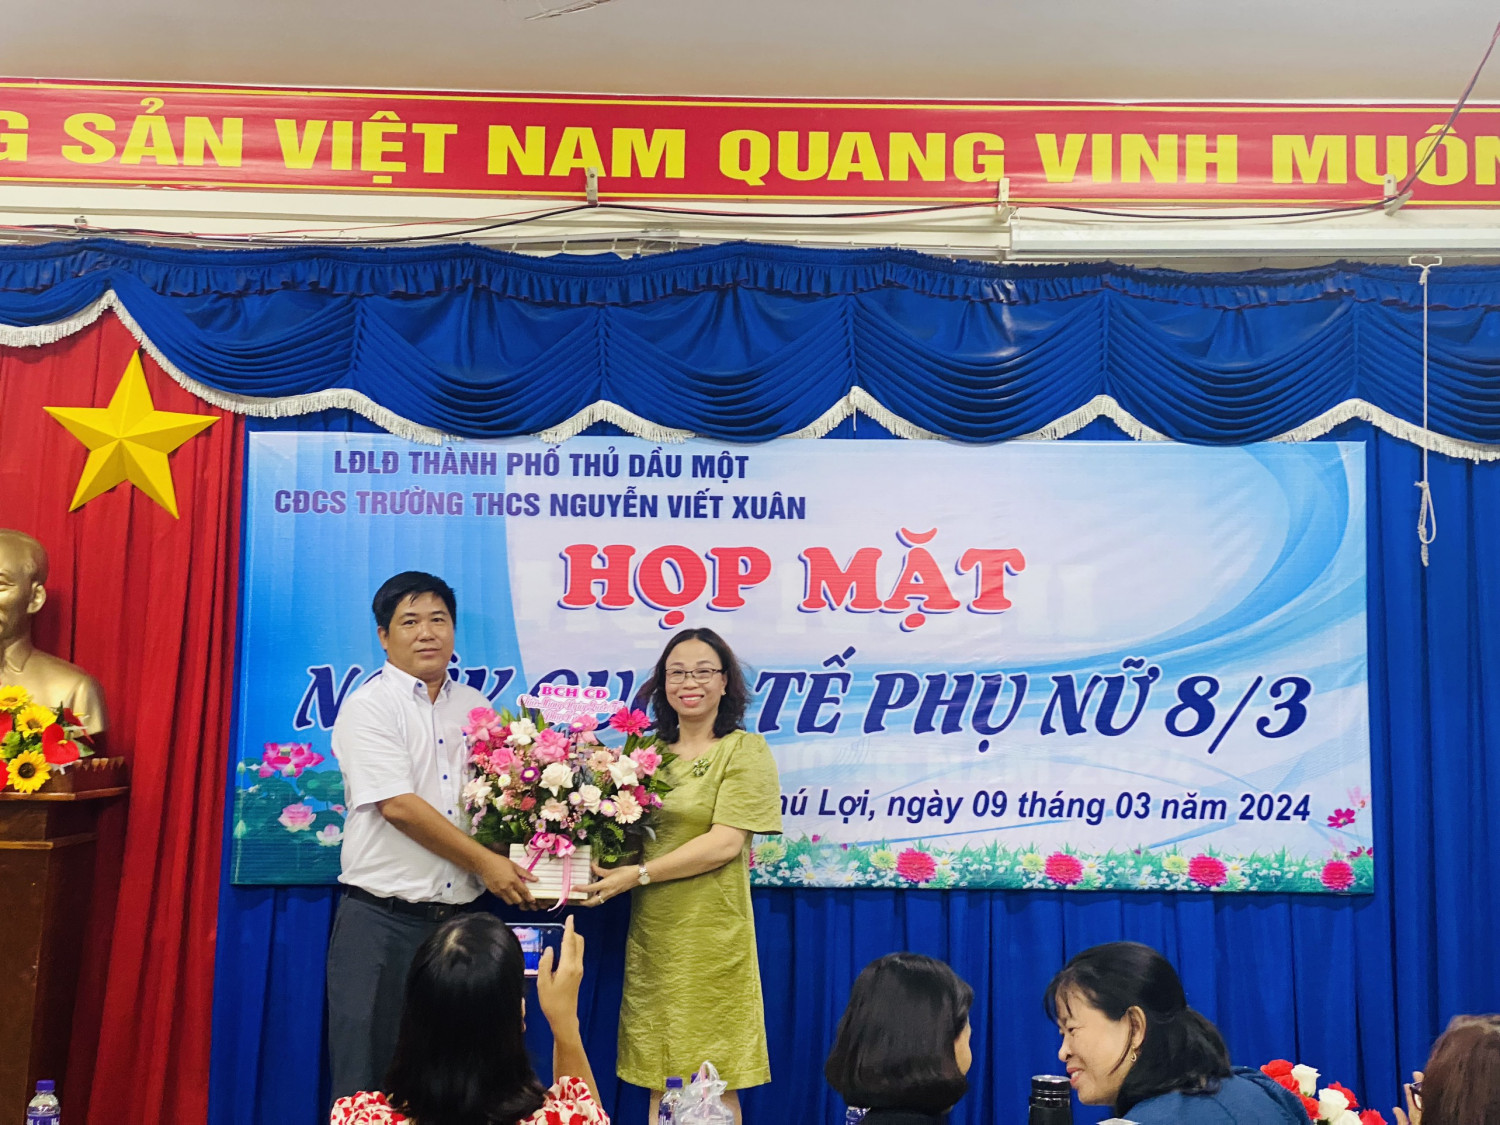 Cô Nguyễn Thị Miễn - nhận hoa từ Ban chấp hành công đoàn trường